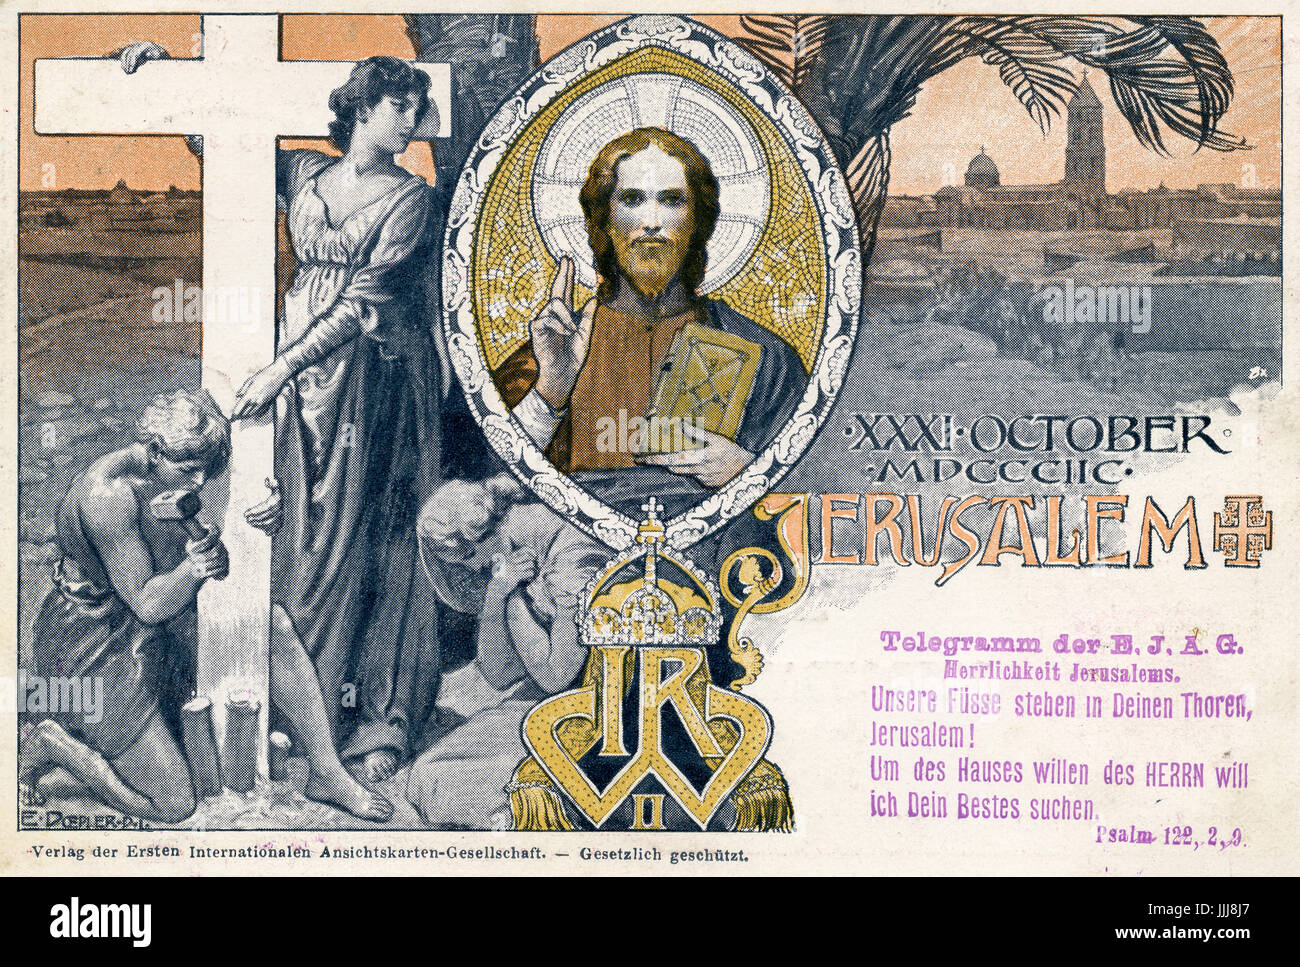 Kaiser Wilhelm visite en Terre Sainte (Palestine), 1898, carte postale commémorative, Jérusalem, avec les mots du psaume 123 Banque D'Images